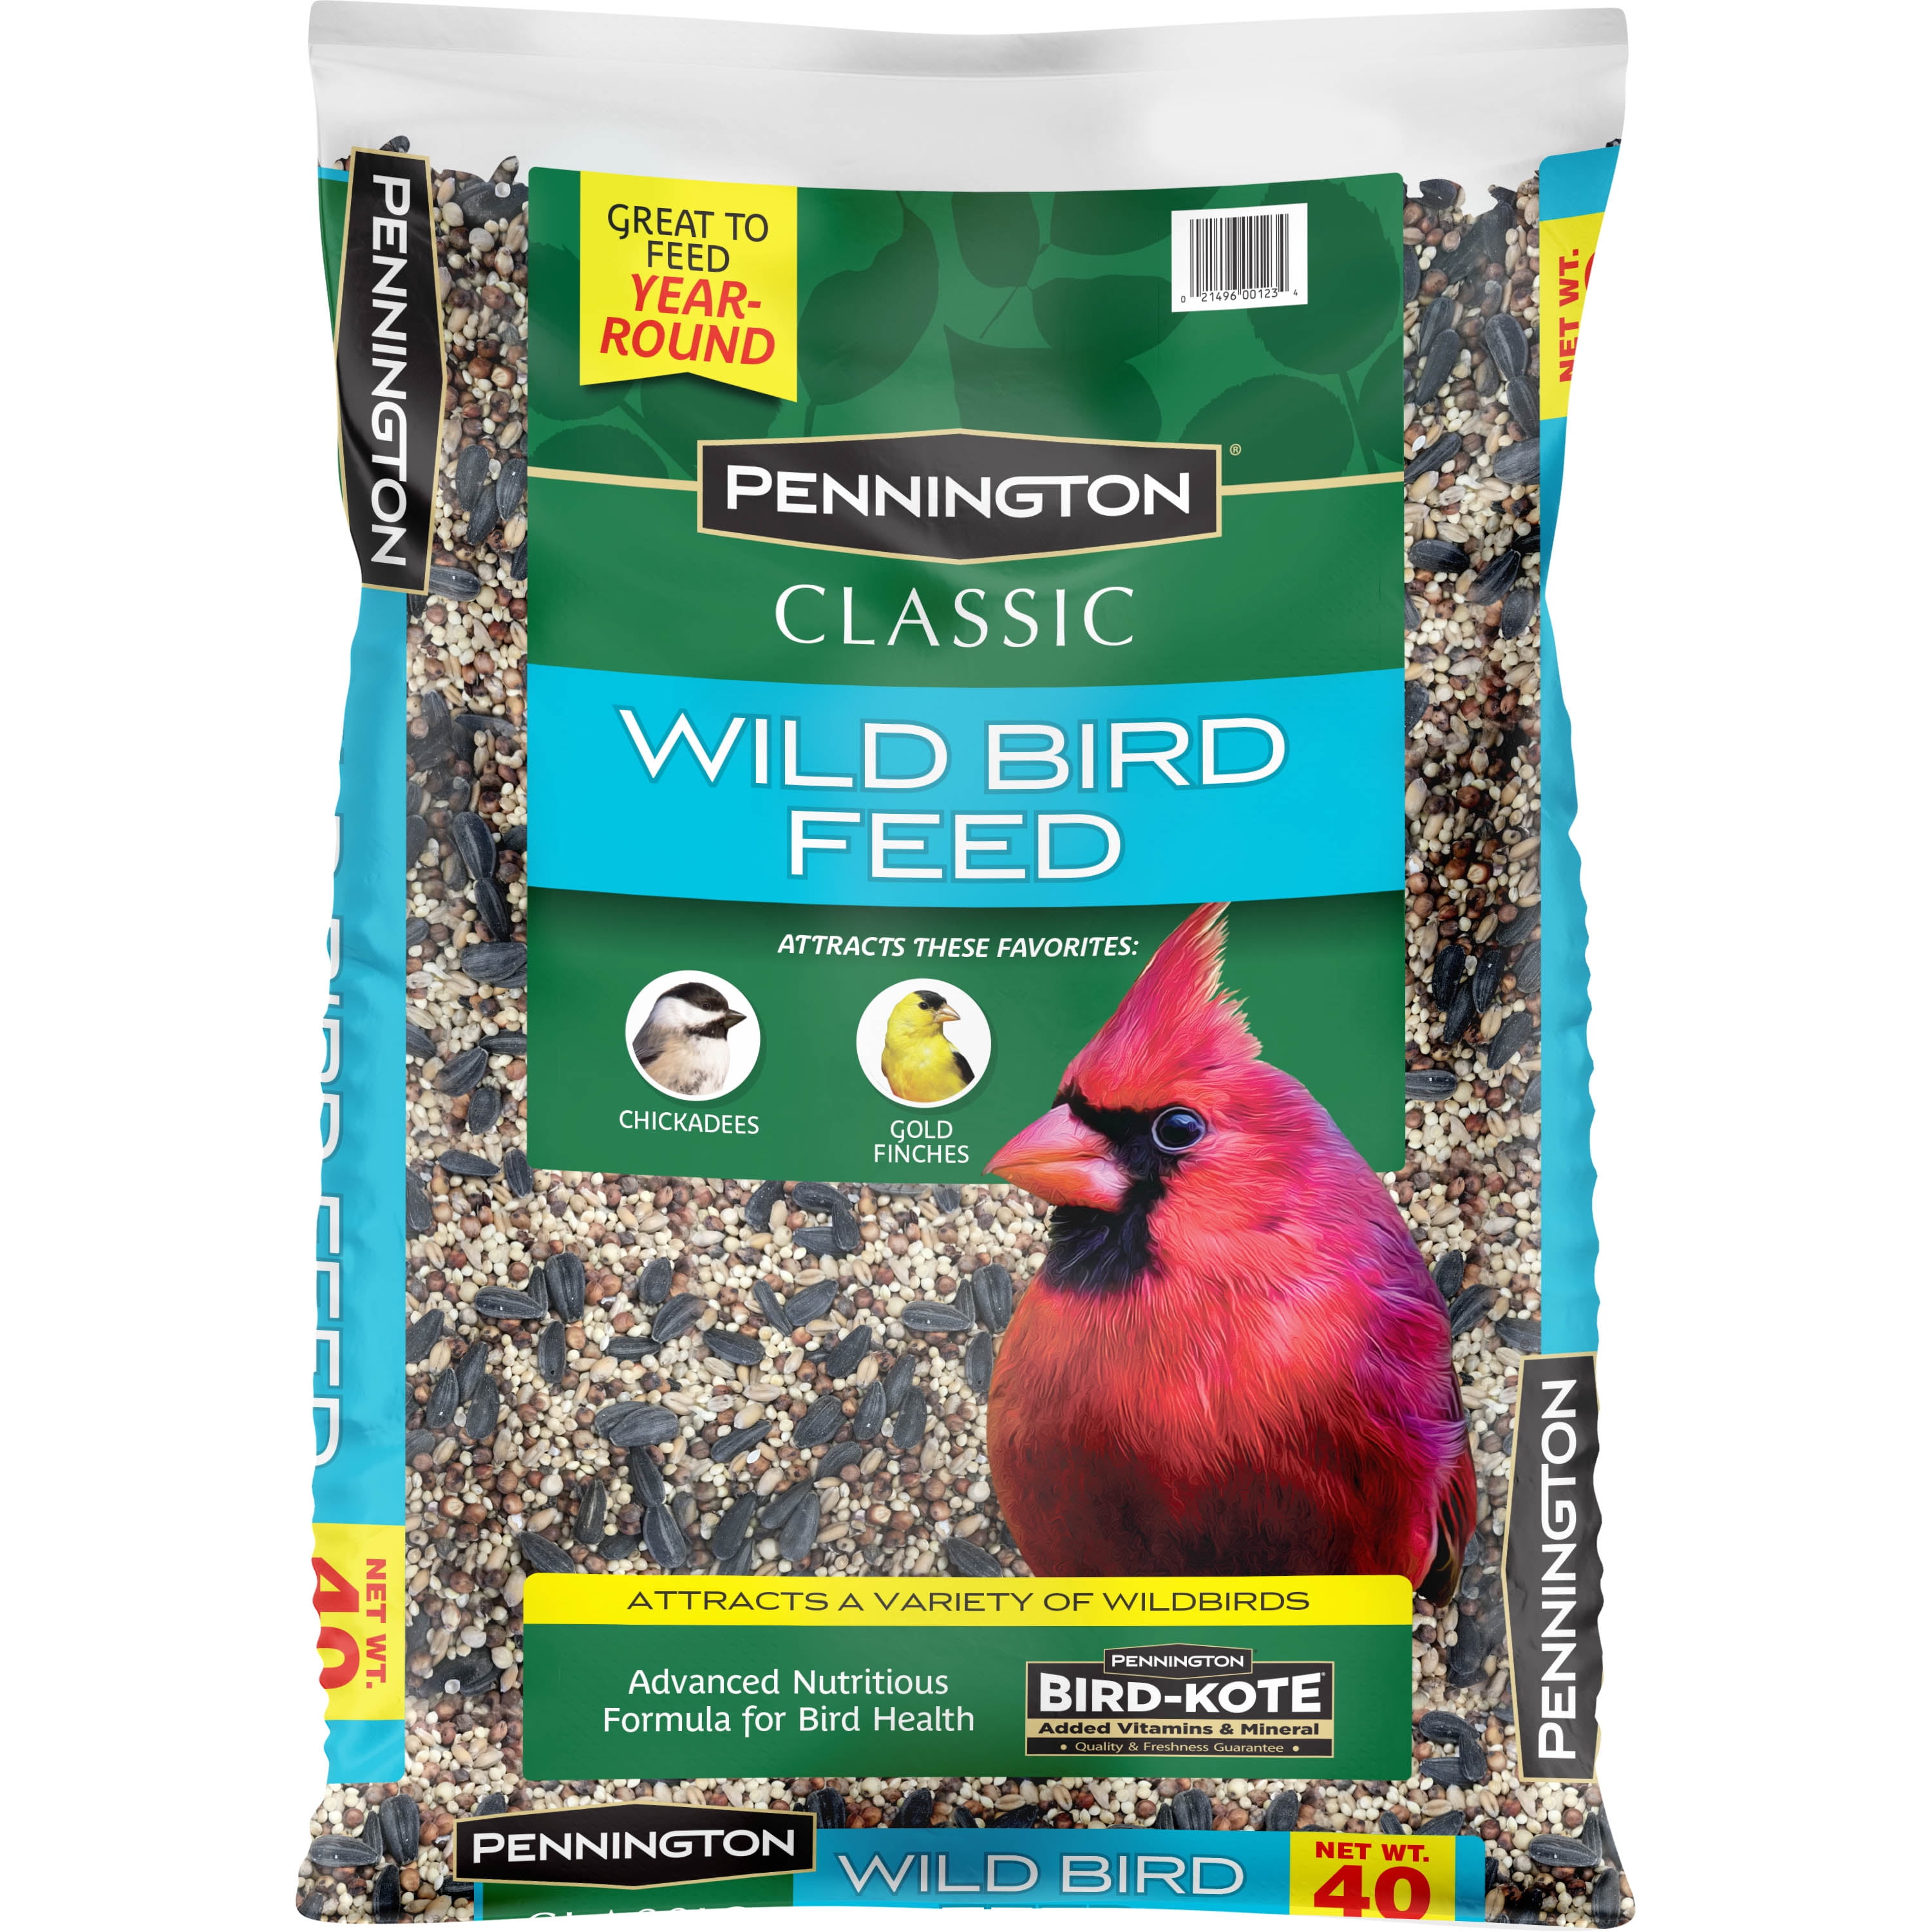 22.5 lb. Wild Bird Seed Food Blend Bucket